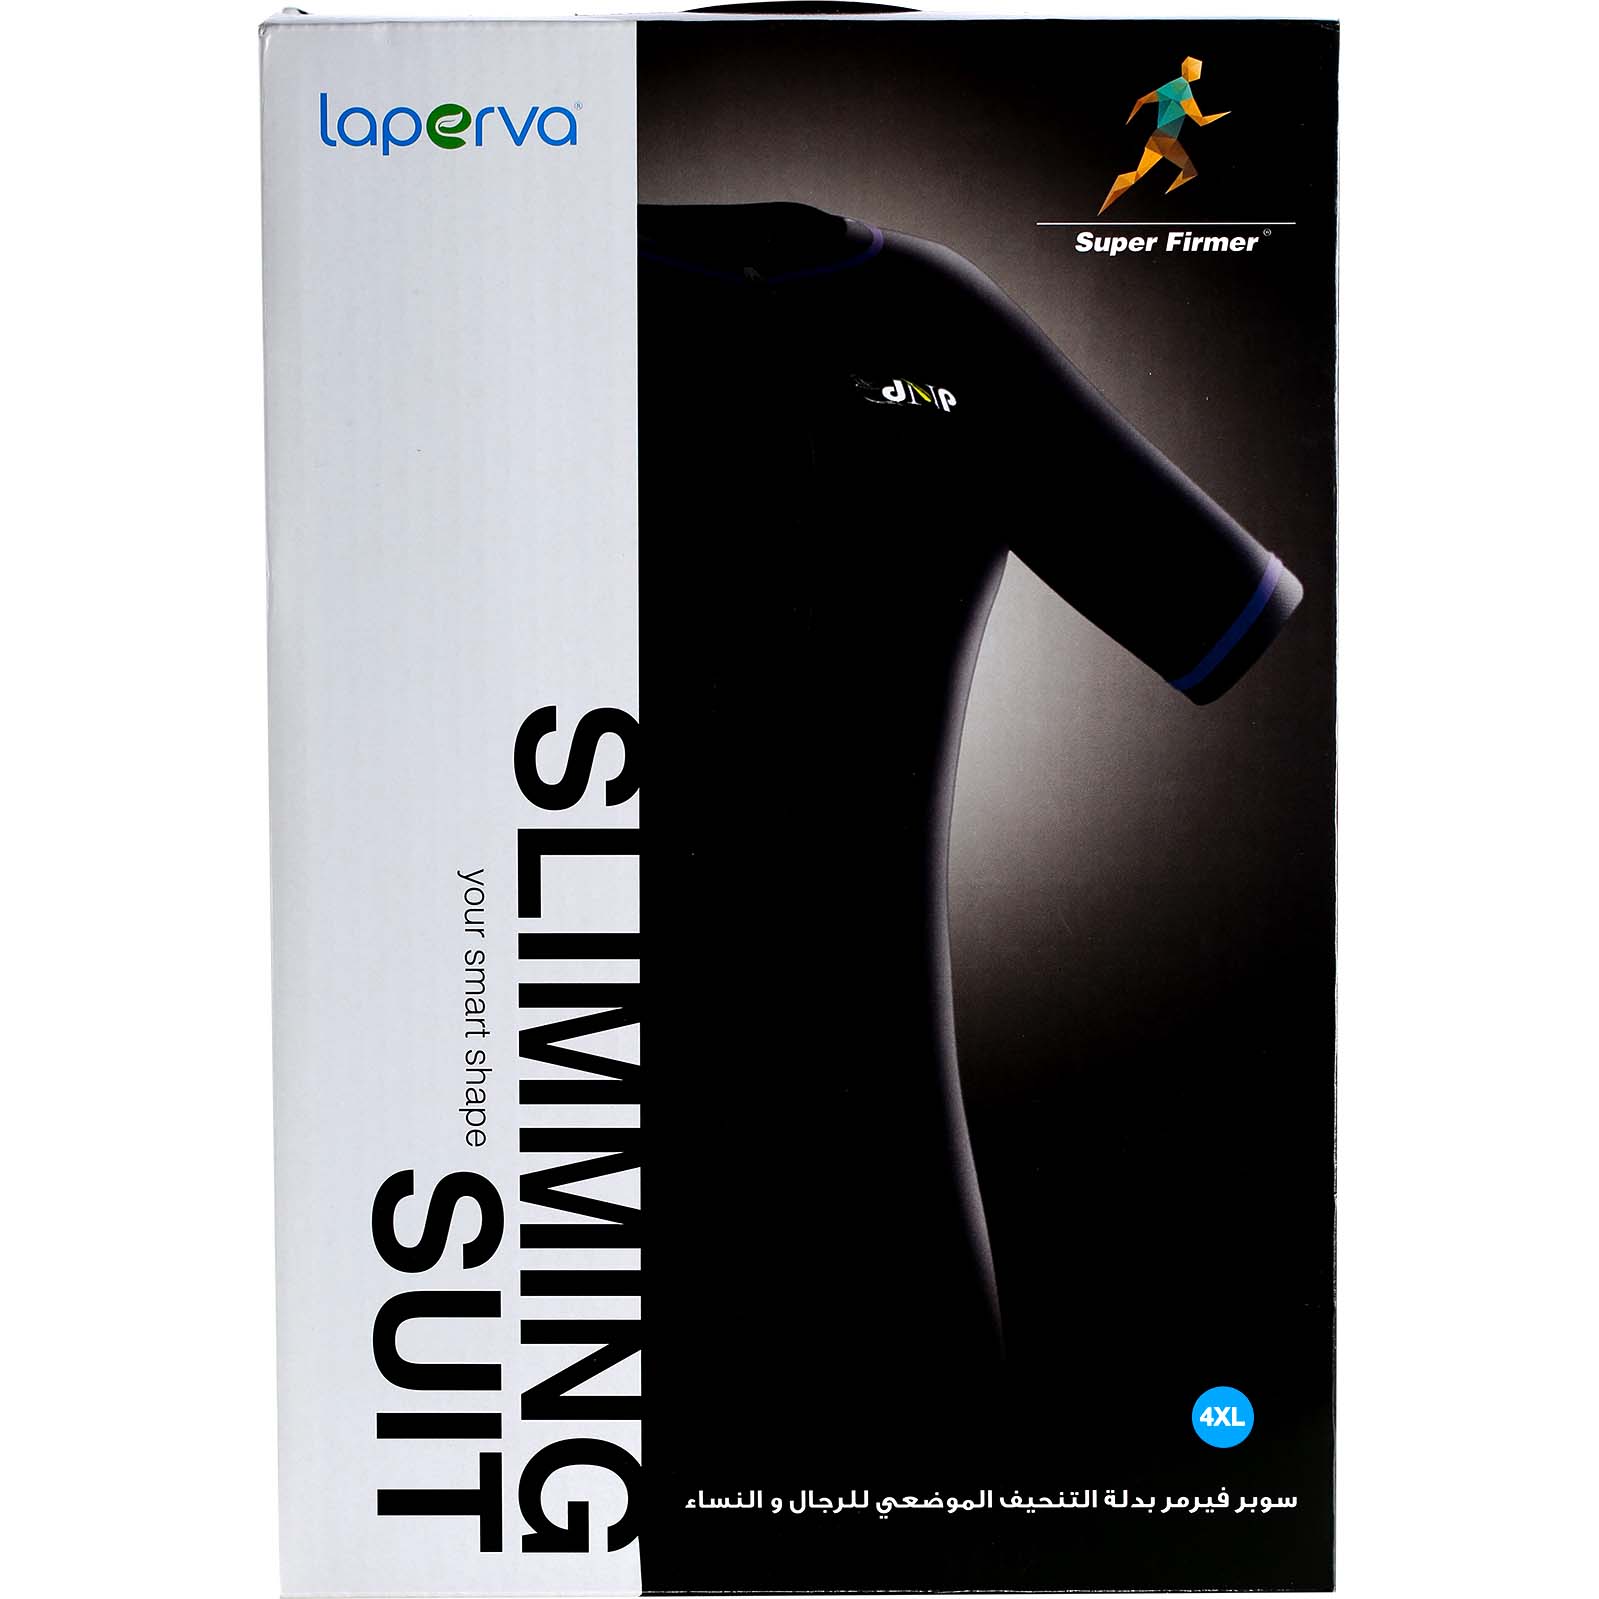 Laperva Slimming Suit, 4 XL, Black